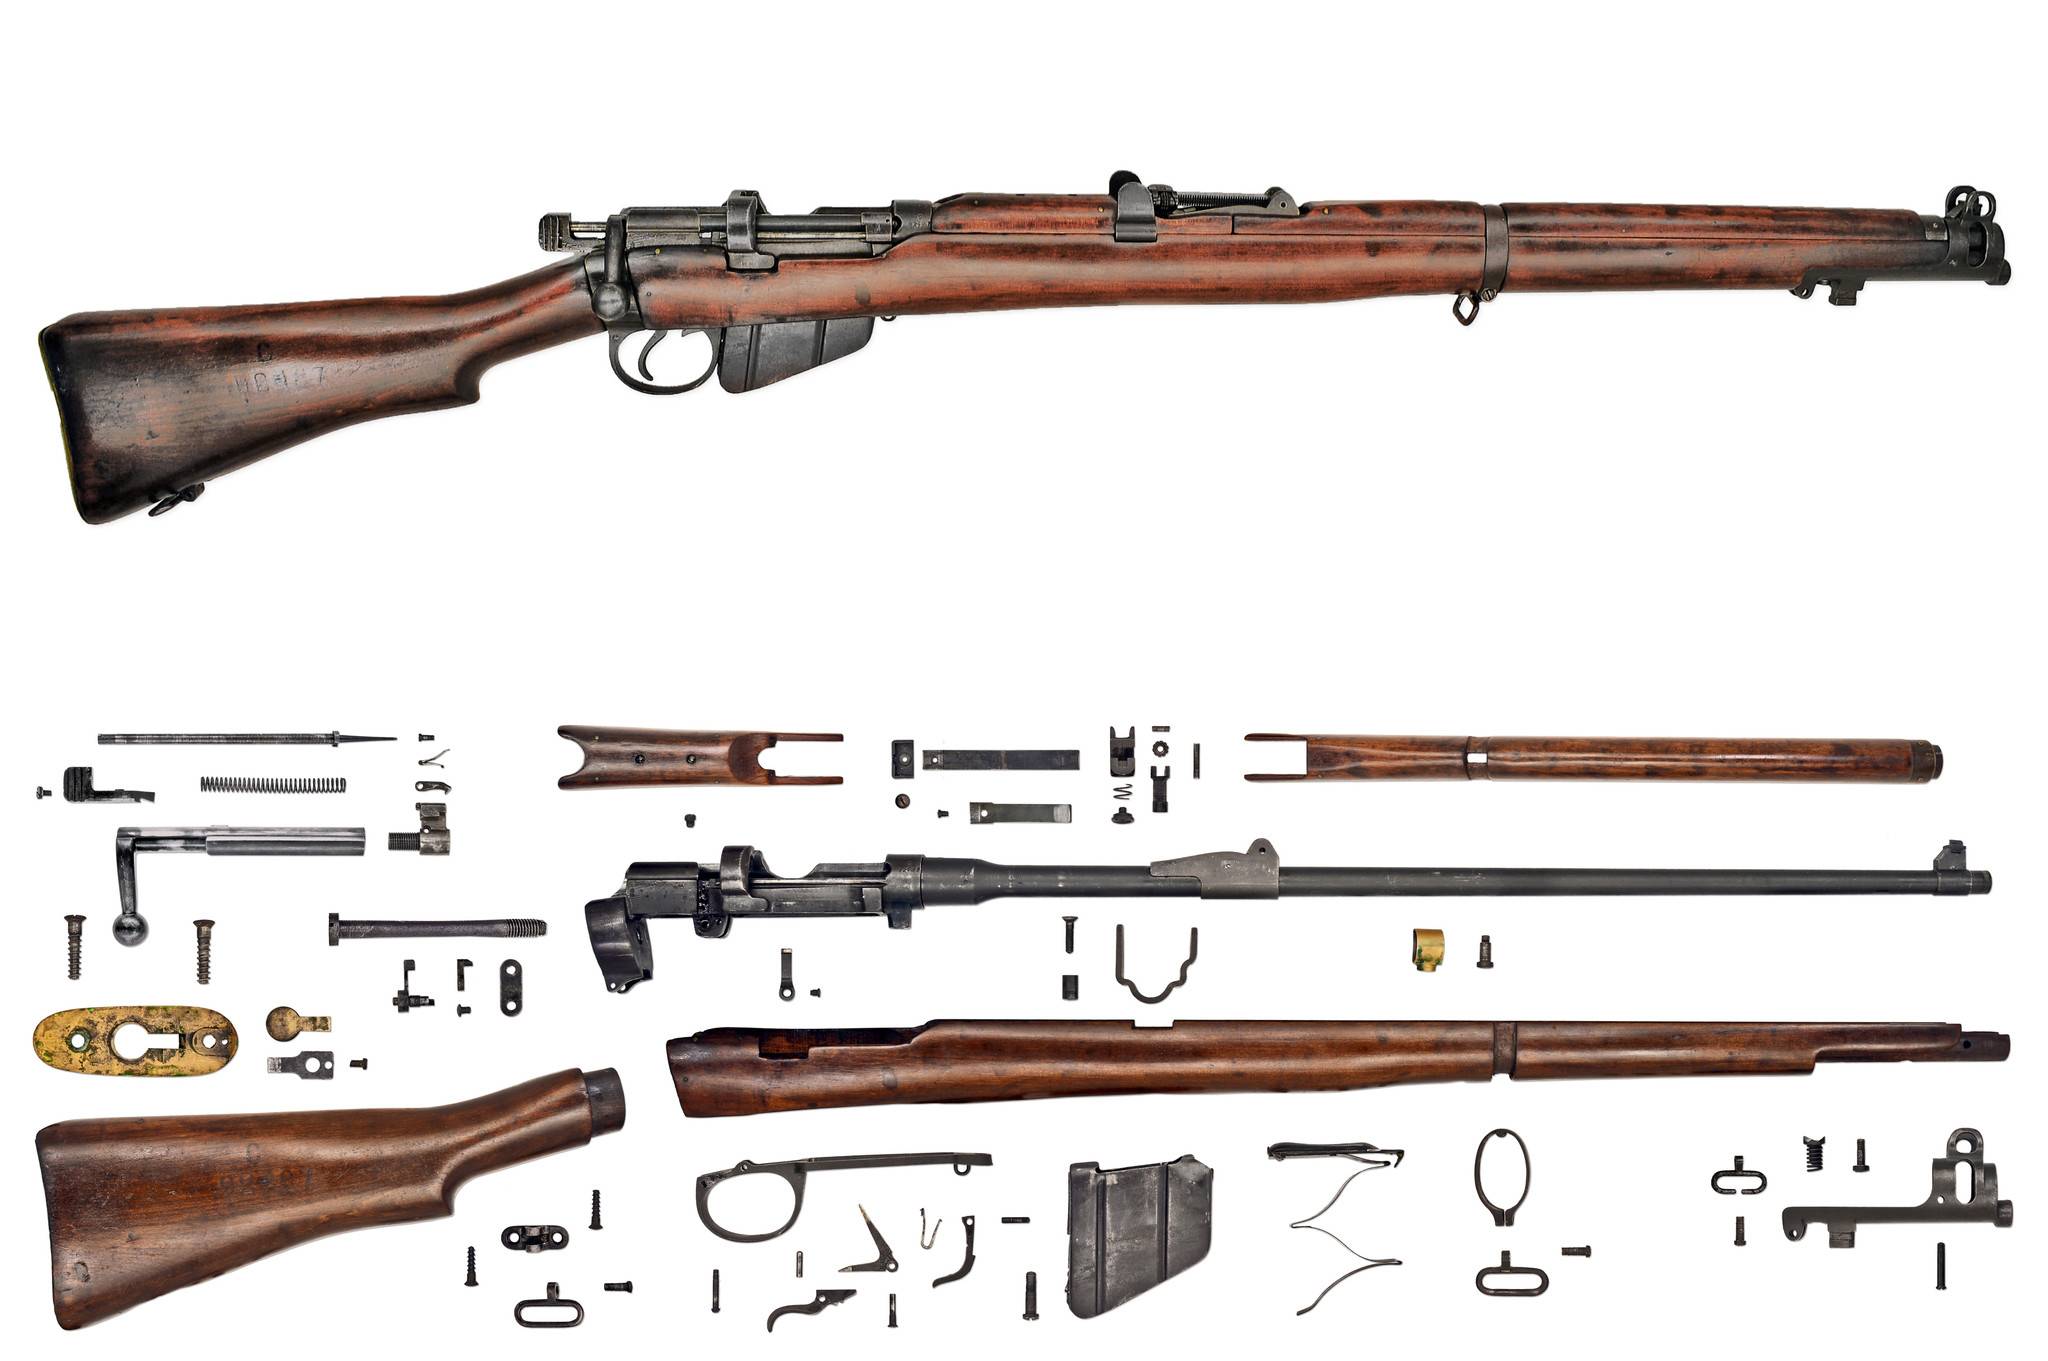 M1917 enfield - m1917 enfield - qwe.wiki